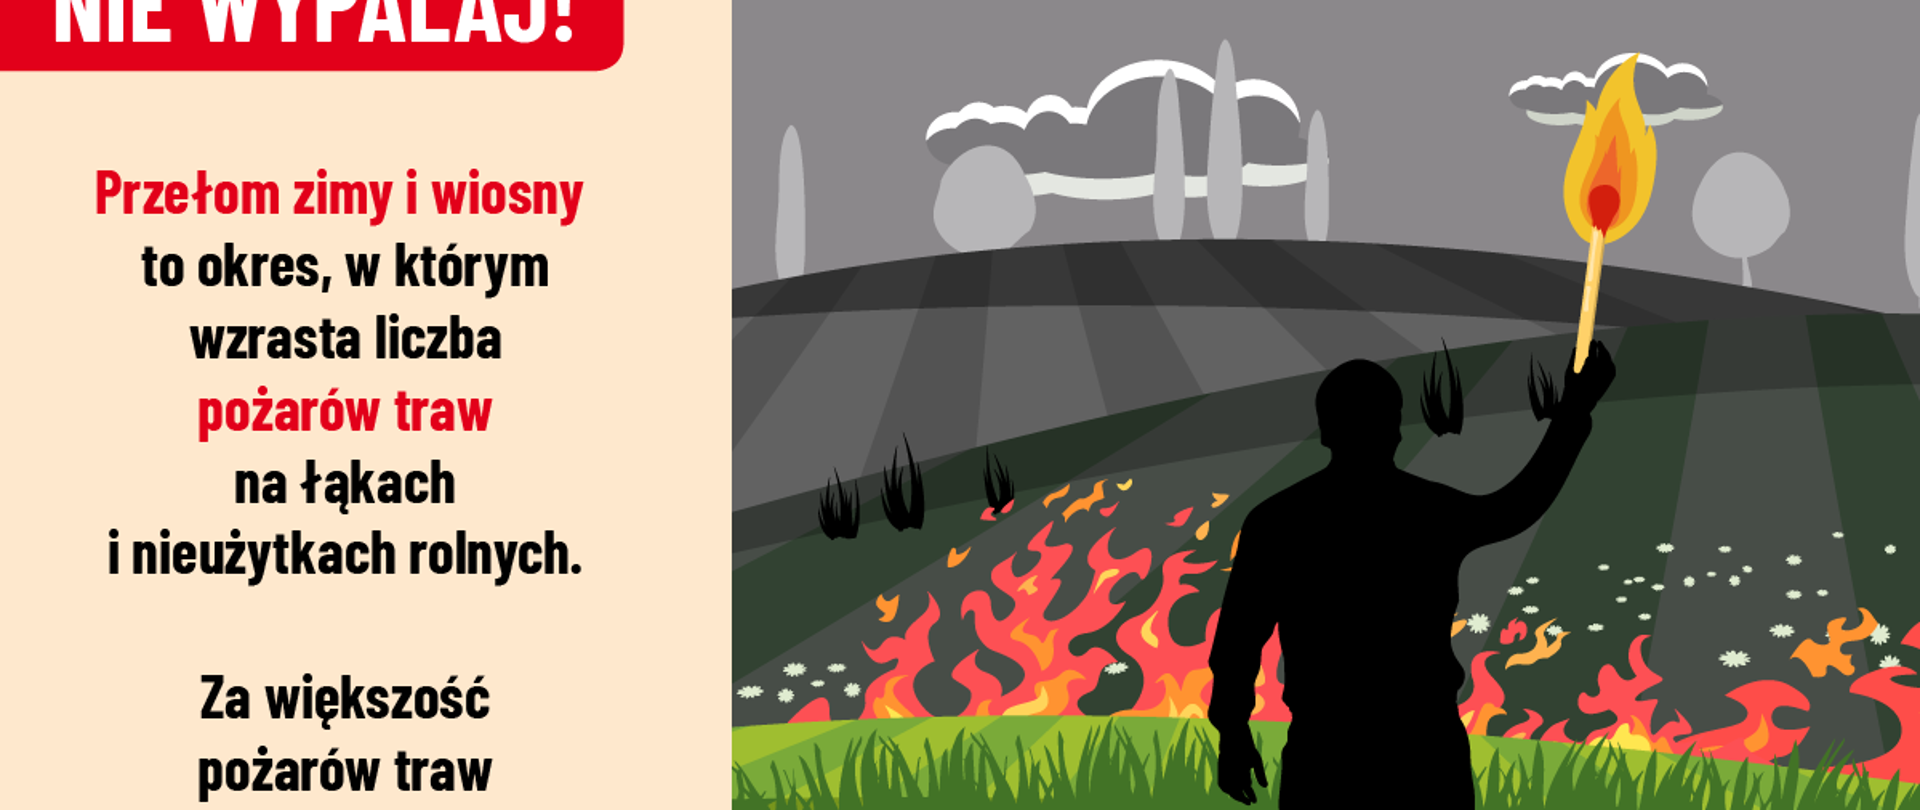 Na plakacie hasło: Nie wypalaj! na pierwszym planie infografika - czarna postać człowieka (mężczyzny), który w reku trzyma pochodnię. Stoi na tle płonącej połaci traw, w tle spalony krajobraz. To sprawca pożaru. 